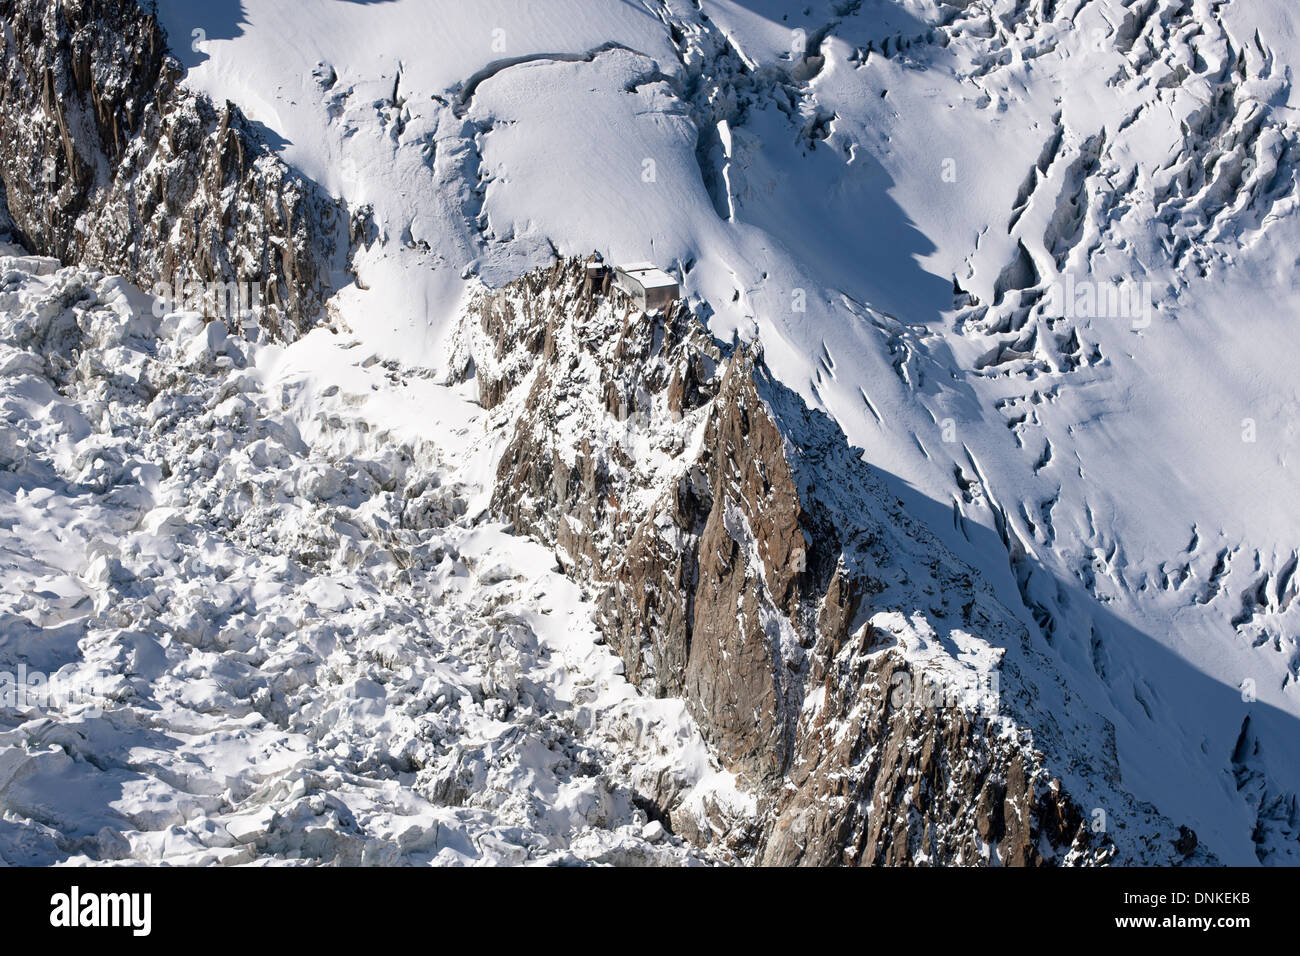 LUFTAUFNAHME. Die Hütte thront prekär auf Granitnadeln und ist von Gletschern mit tiefen Spalten umgeben. Grands Mulets Hütte, Chamonix, Frankreich. Stockfoto